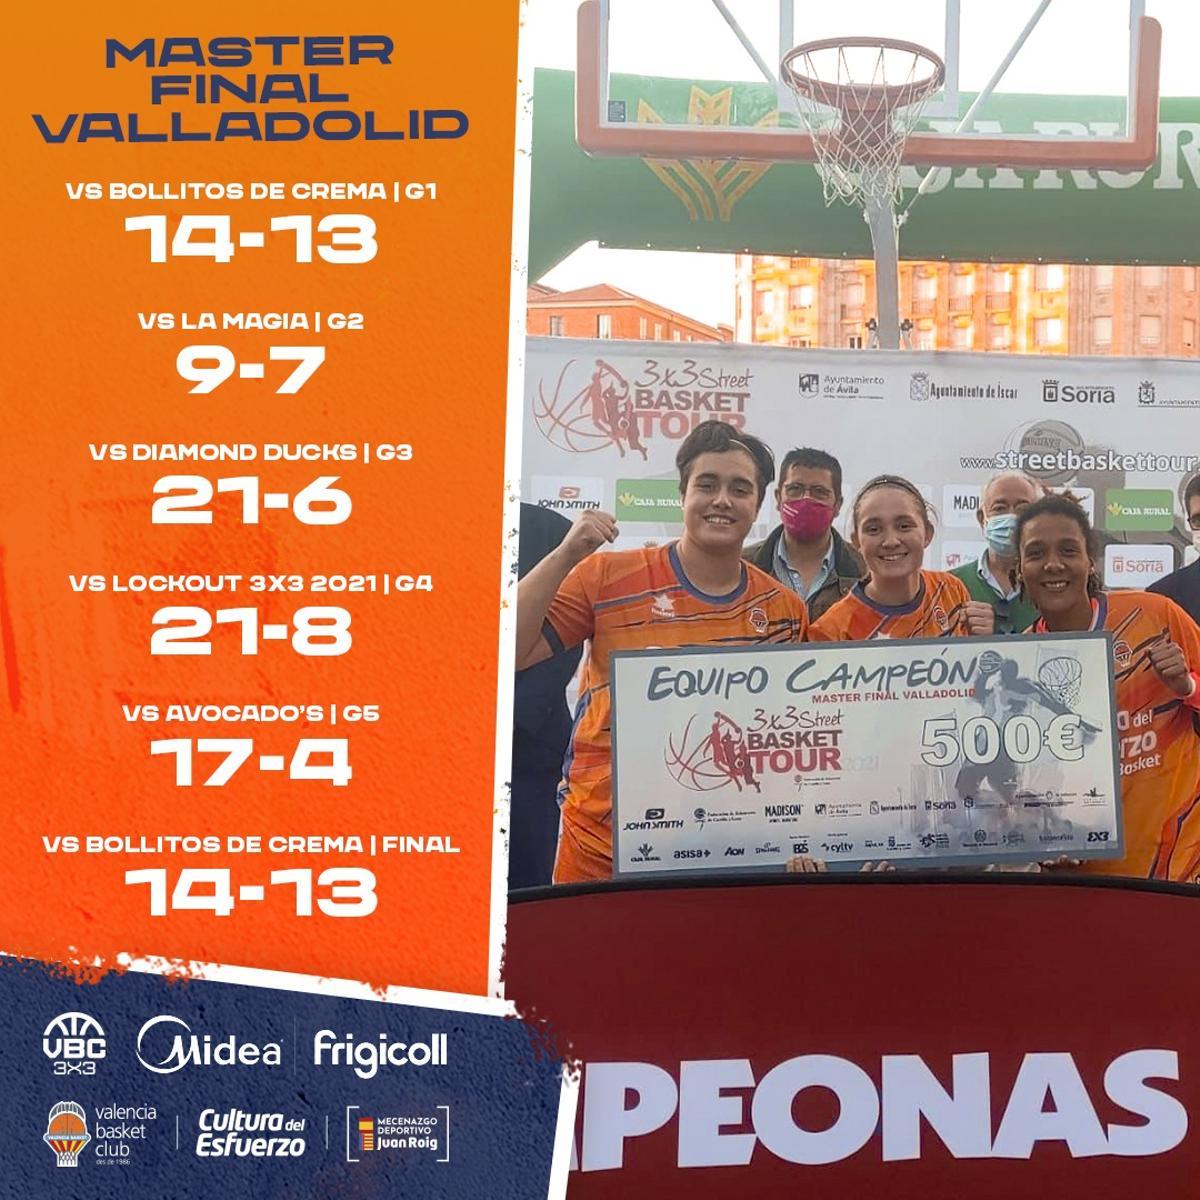 Las campeonas del Master Final en Valladolid tras un torneo perfecto